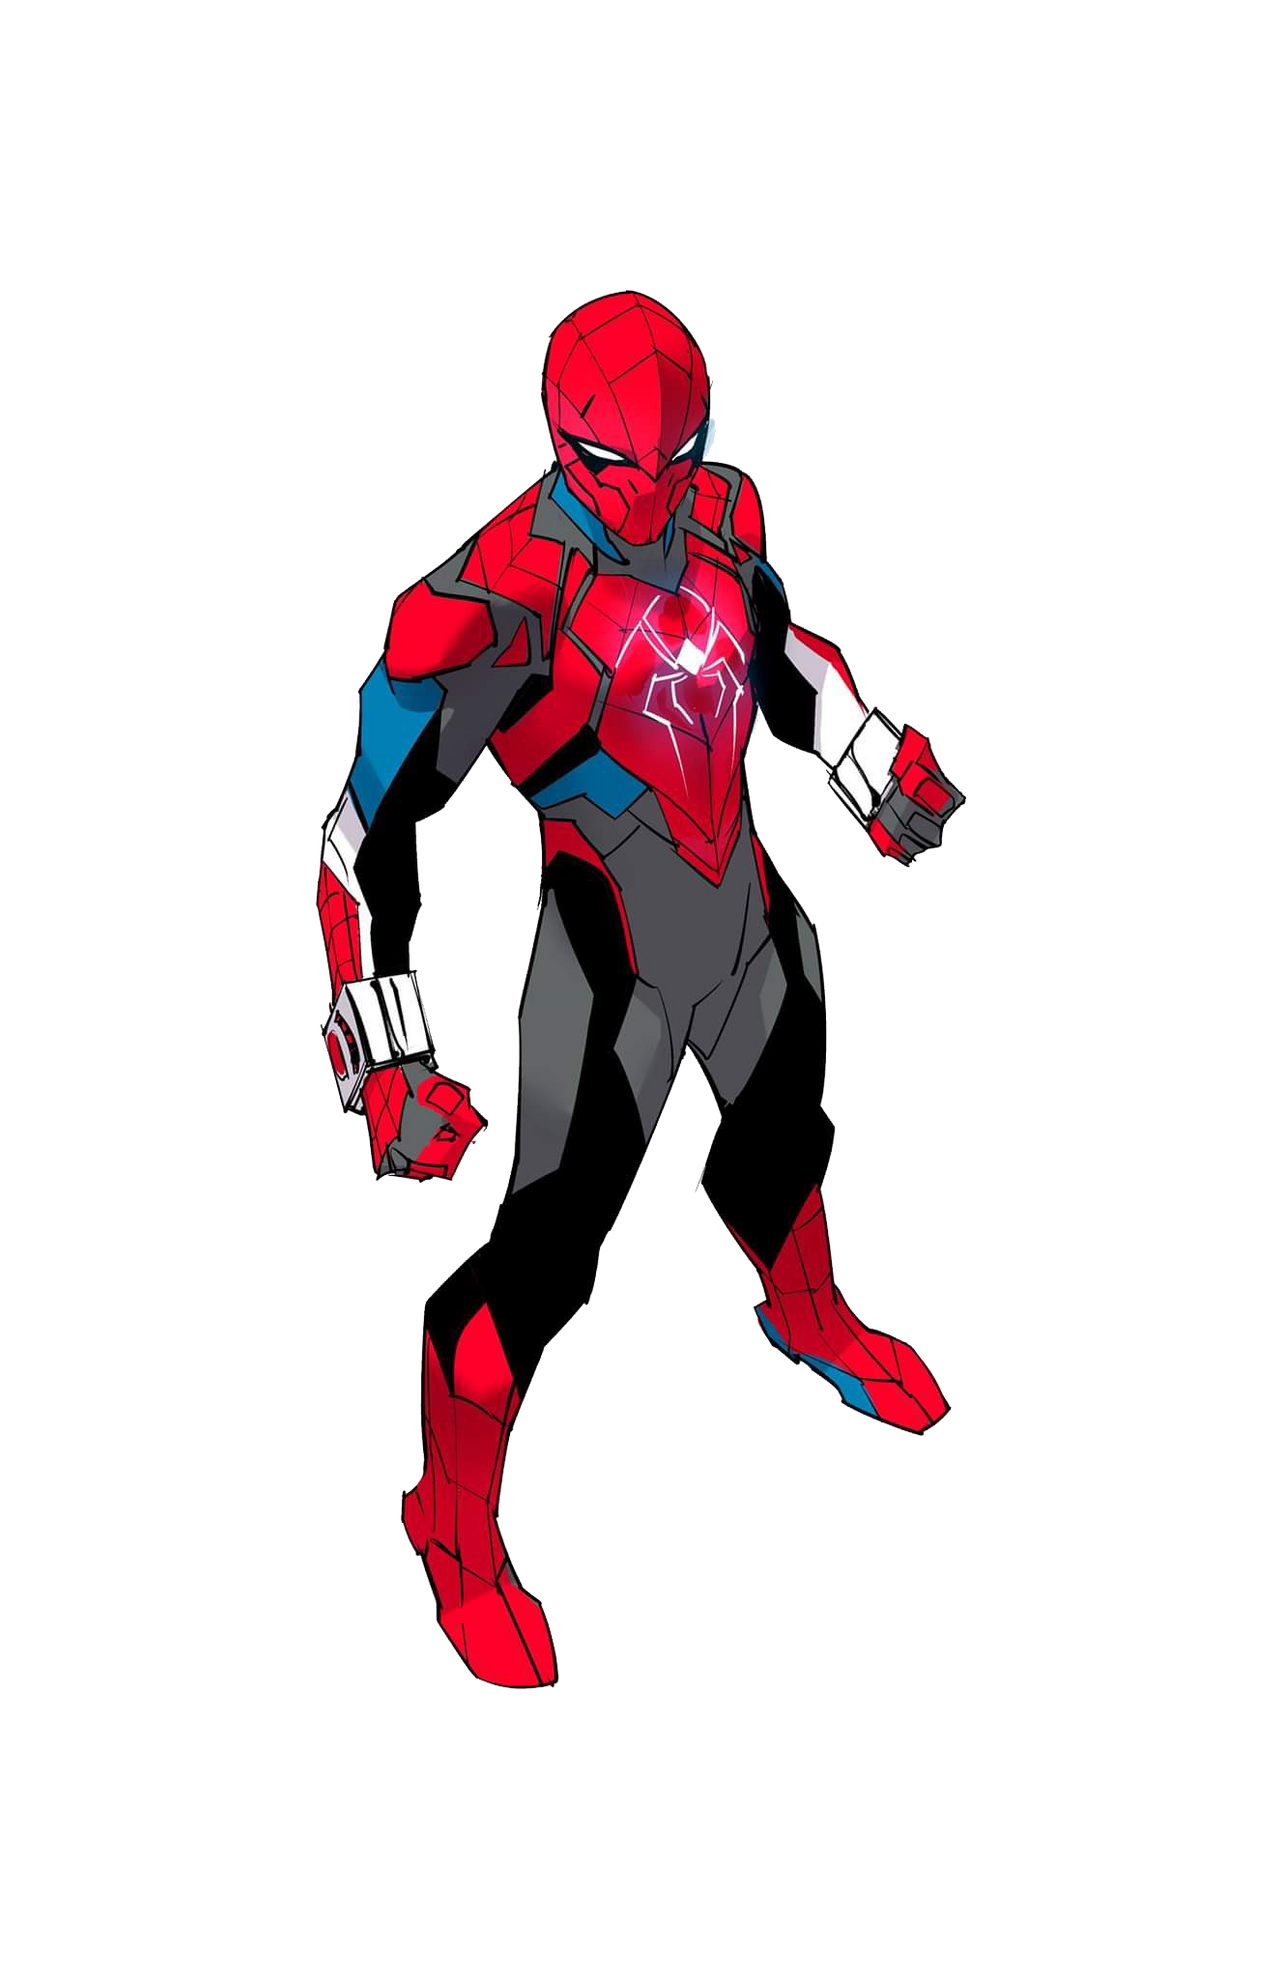 Spider Ranger by Saiyanking02 on DeviantArt